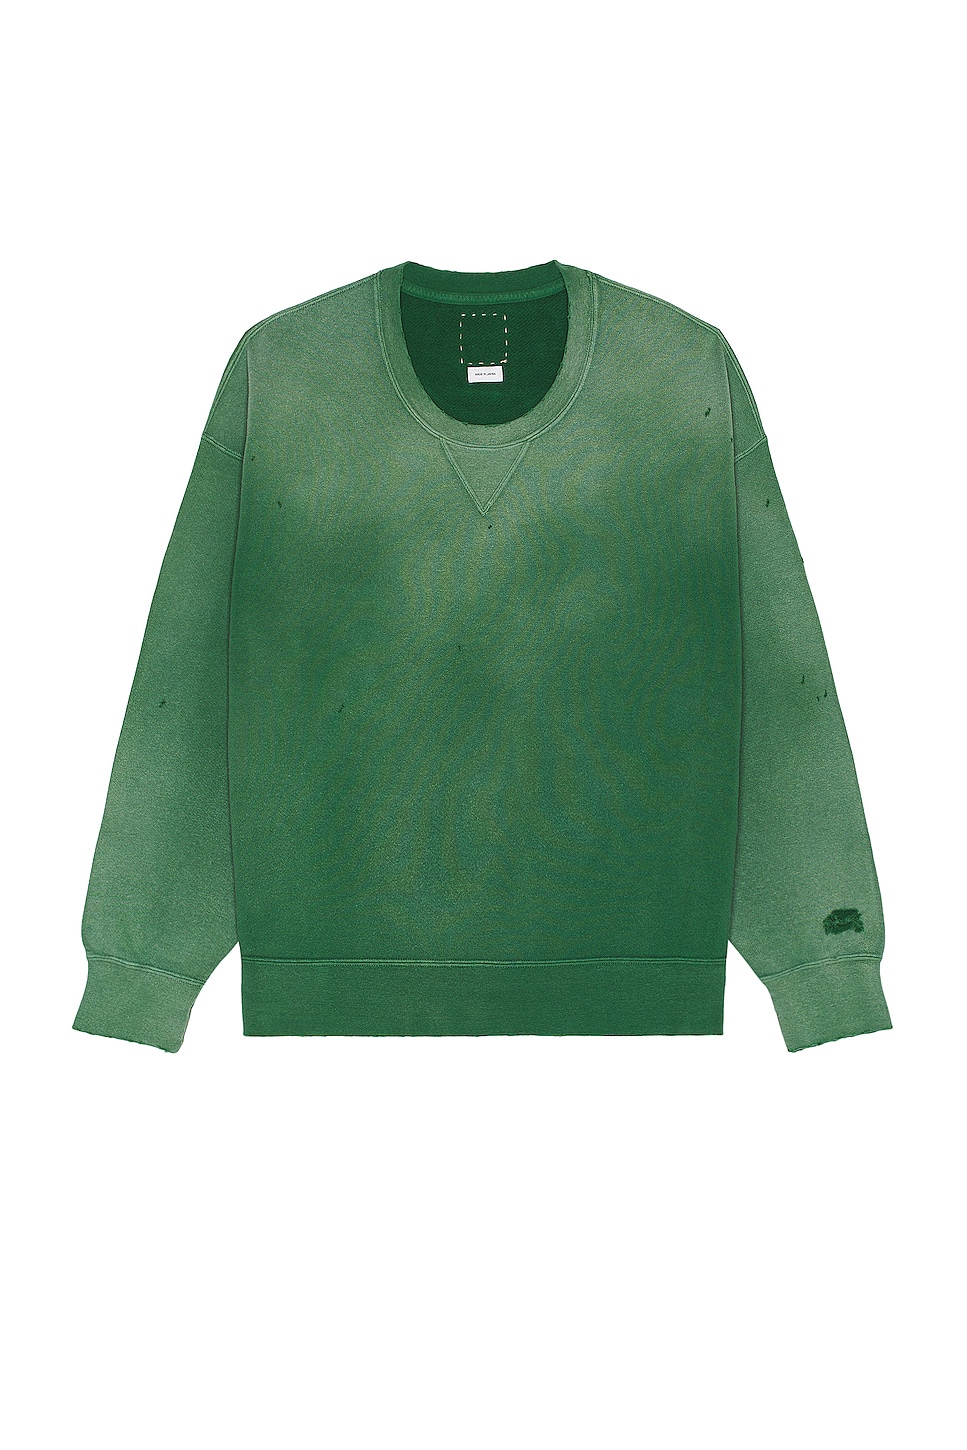 Image 1 of Visvim Jumbo Sb Crash Sweater in Green